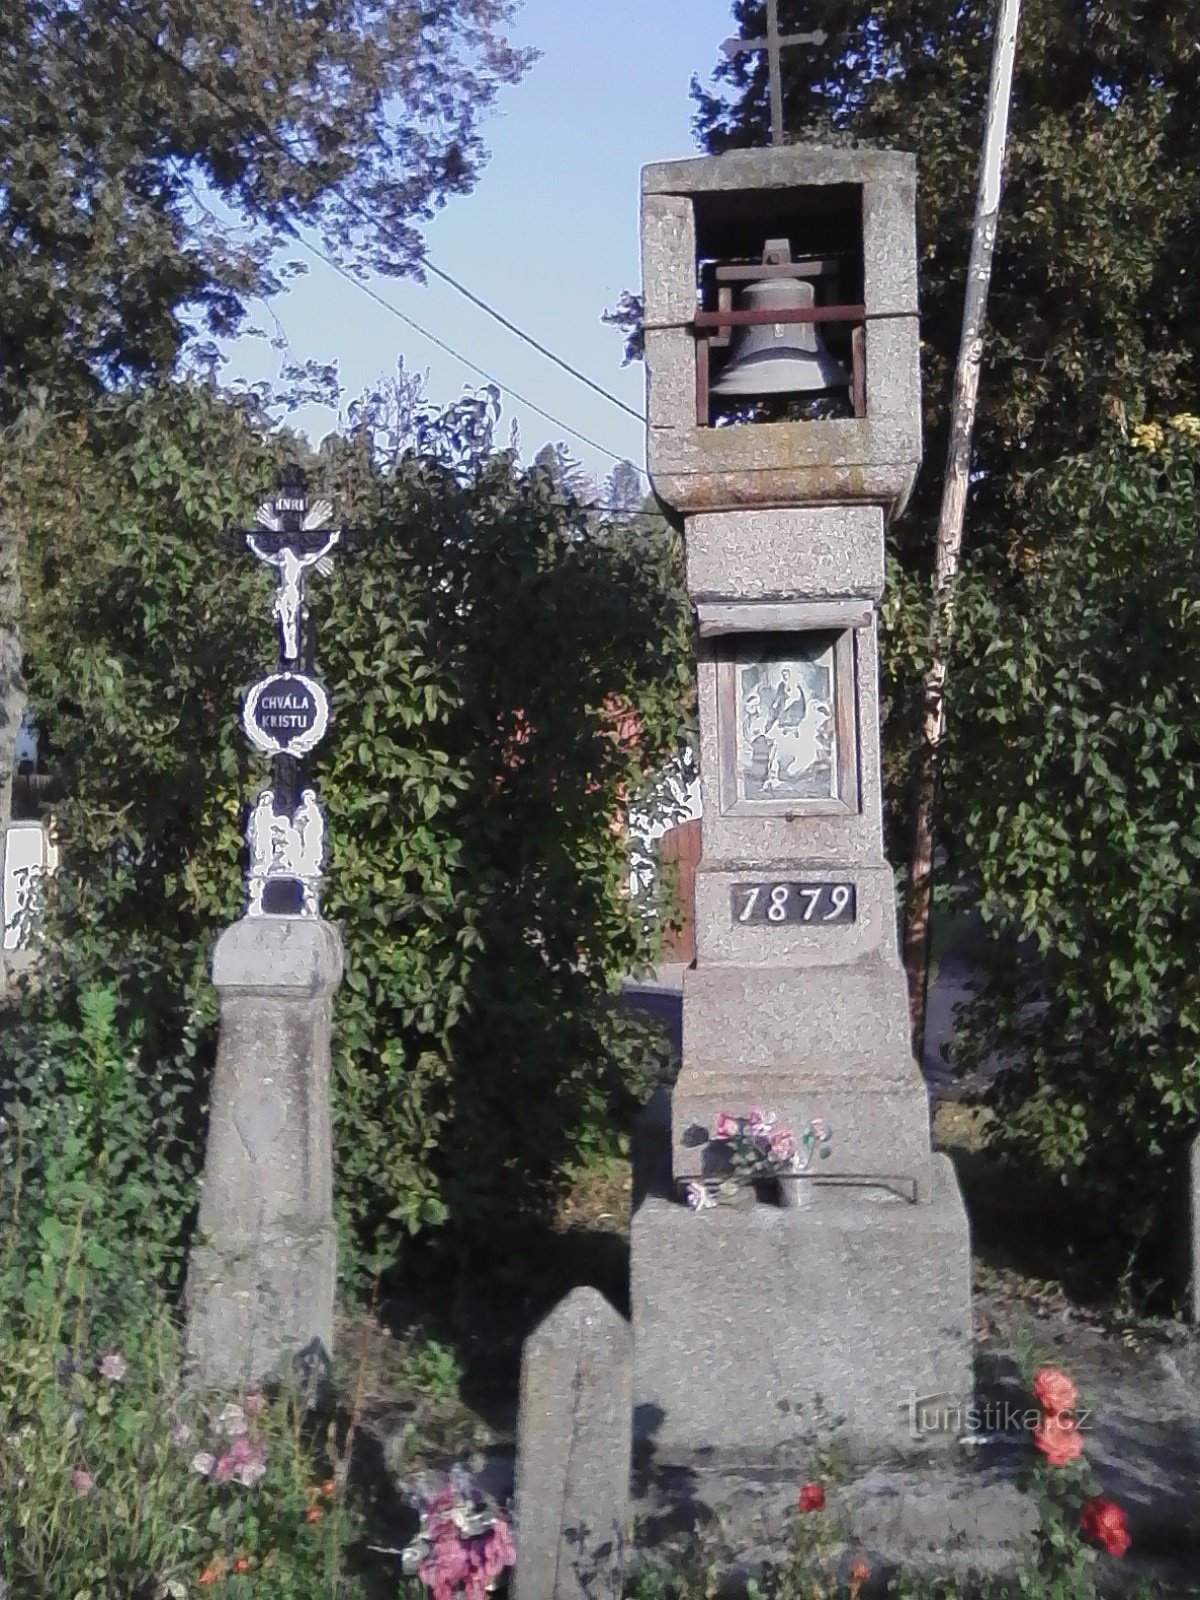 2. Kivestä veistetty kellotapuli ristillä vuodelta 1879 Vilasová Lhotasta